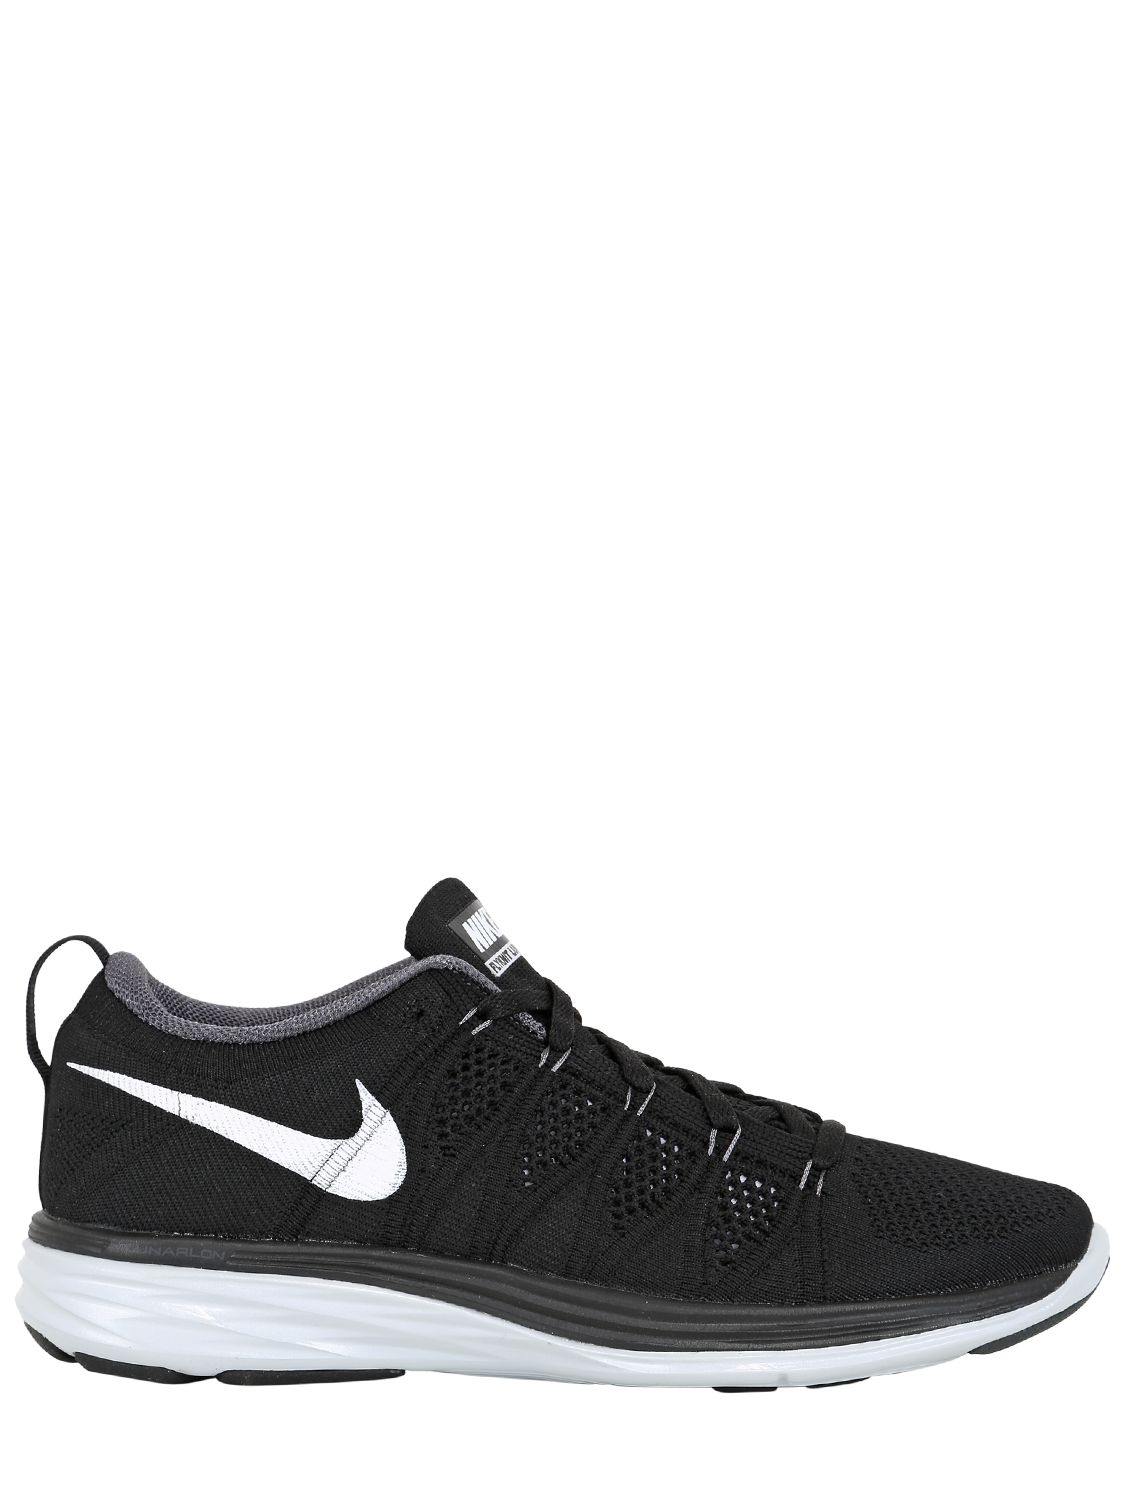 Nike Flyknit Lunar2 Running Sneakers in Black/White (Black) for Men - Lyst